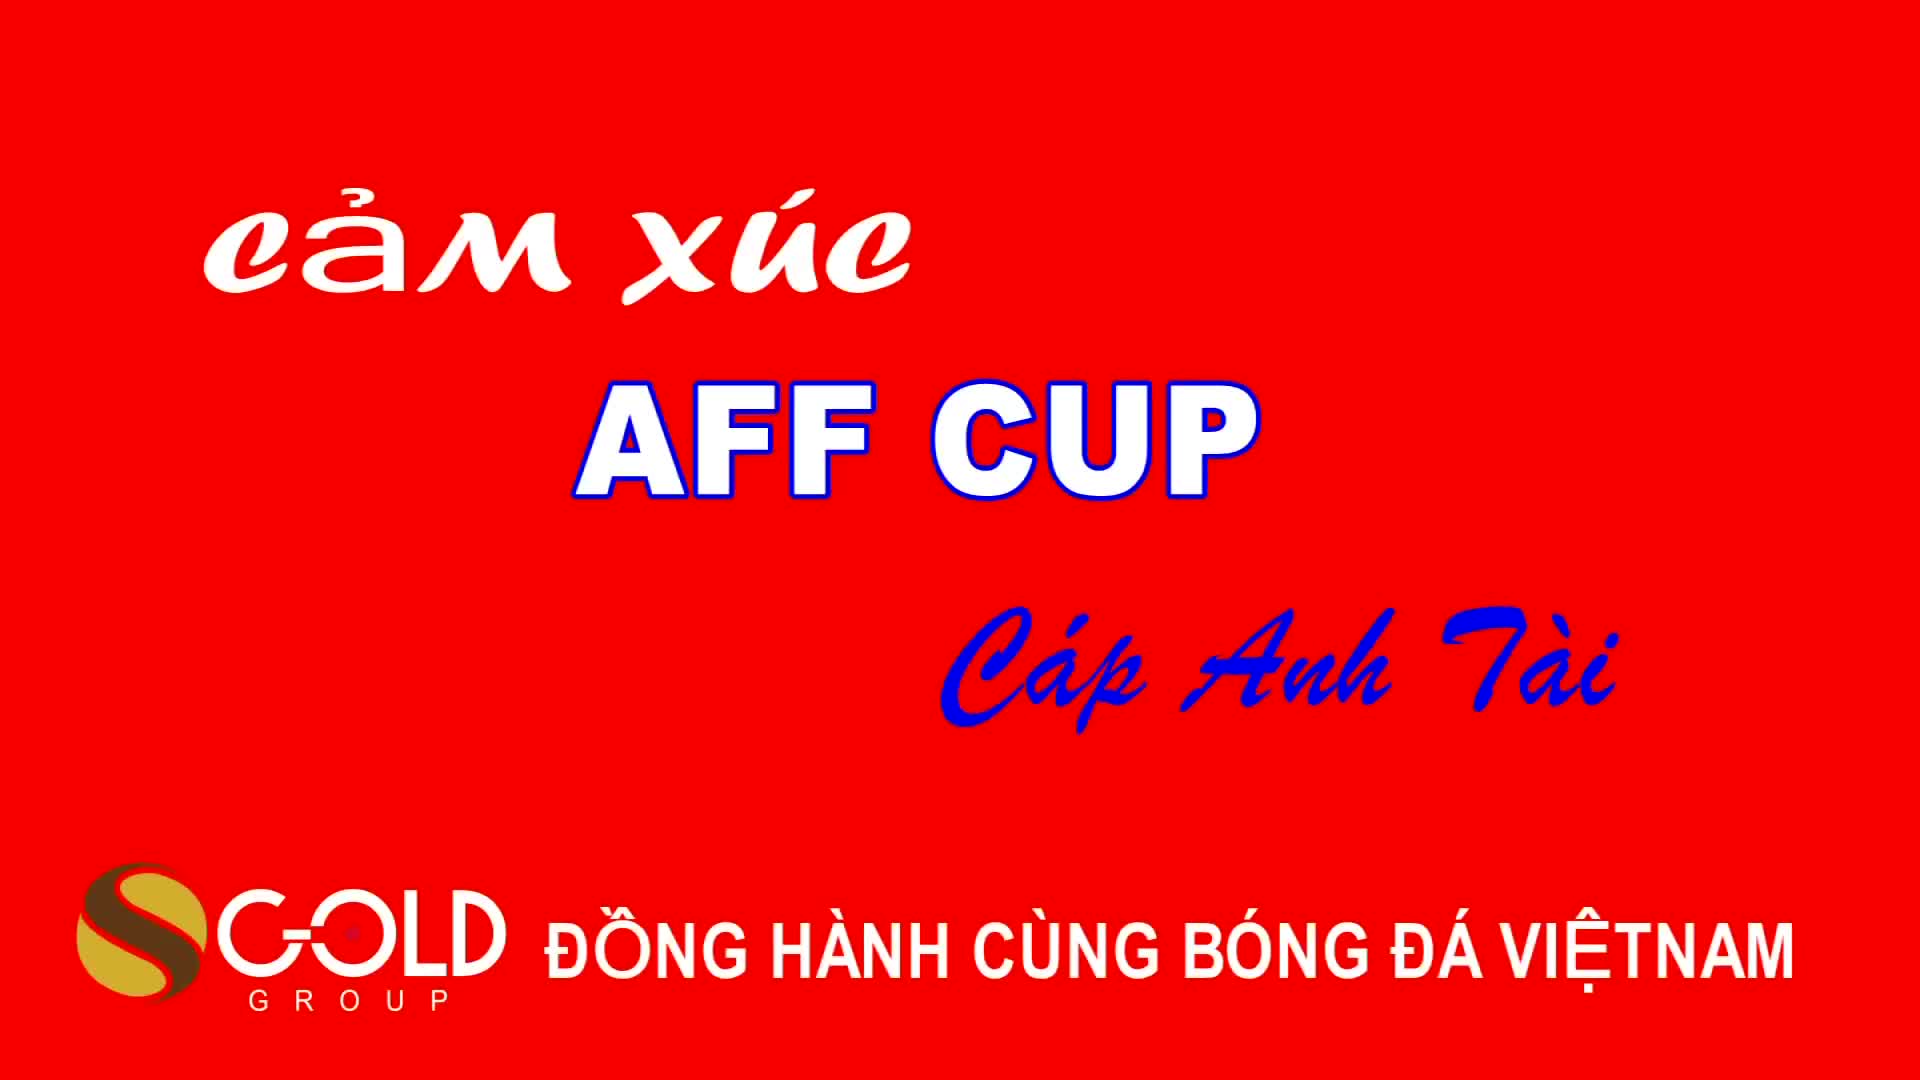 Sôi động với Cảm xúc AFF Cup 2018 tiếp lửa đội tuyển Việt Nam